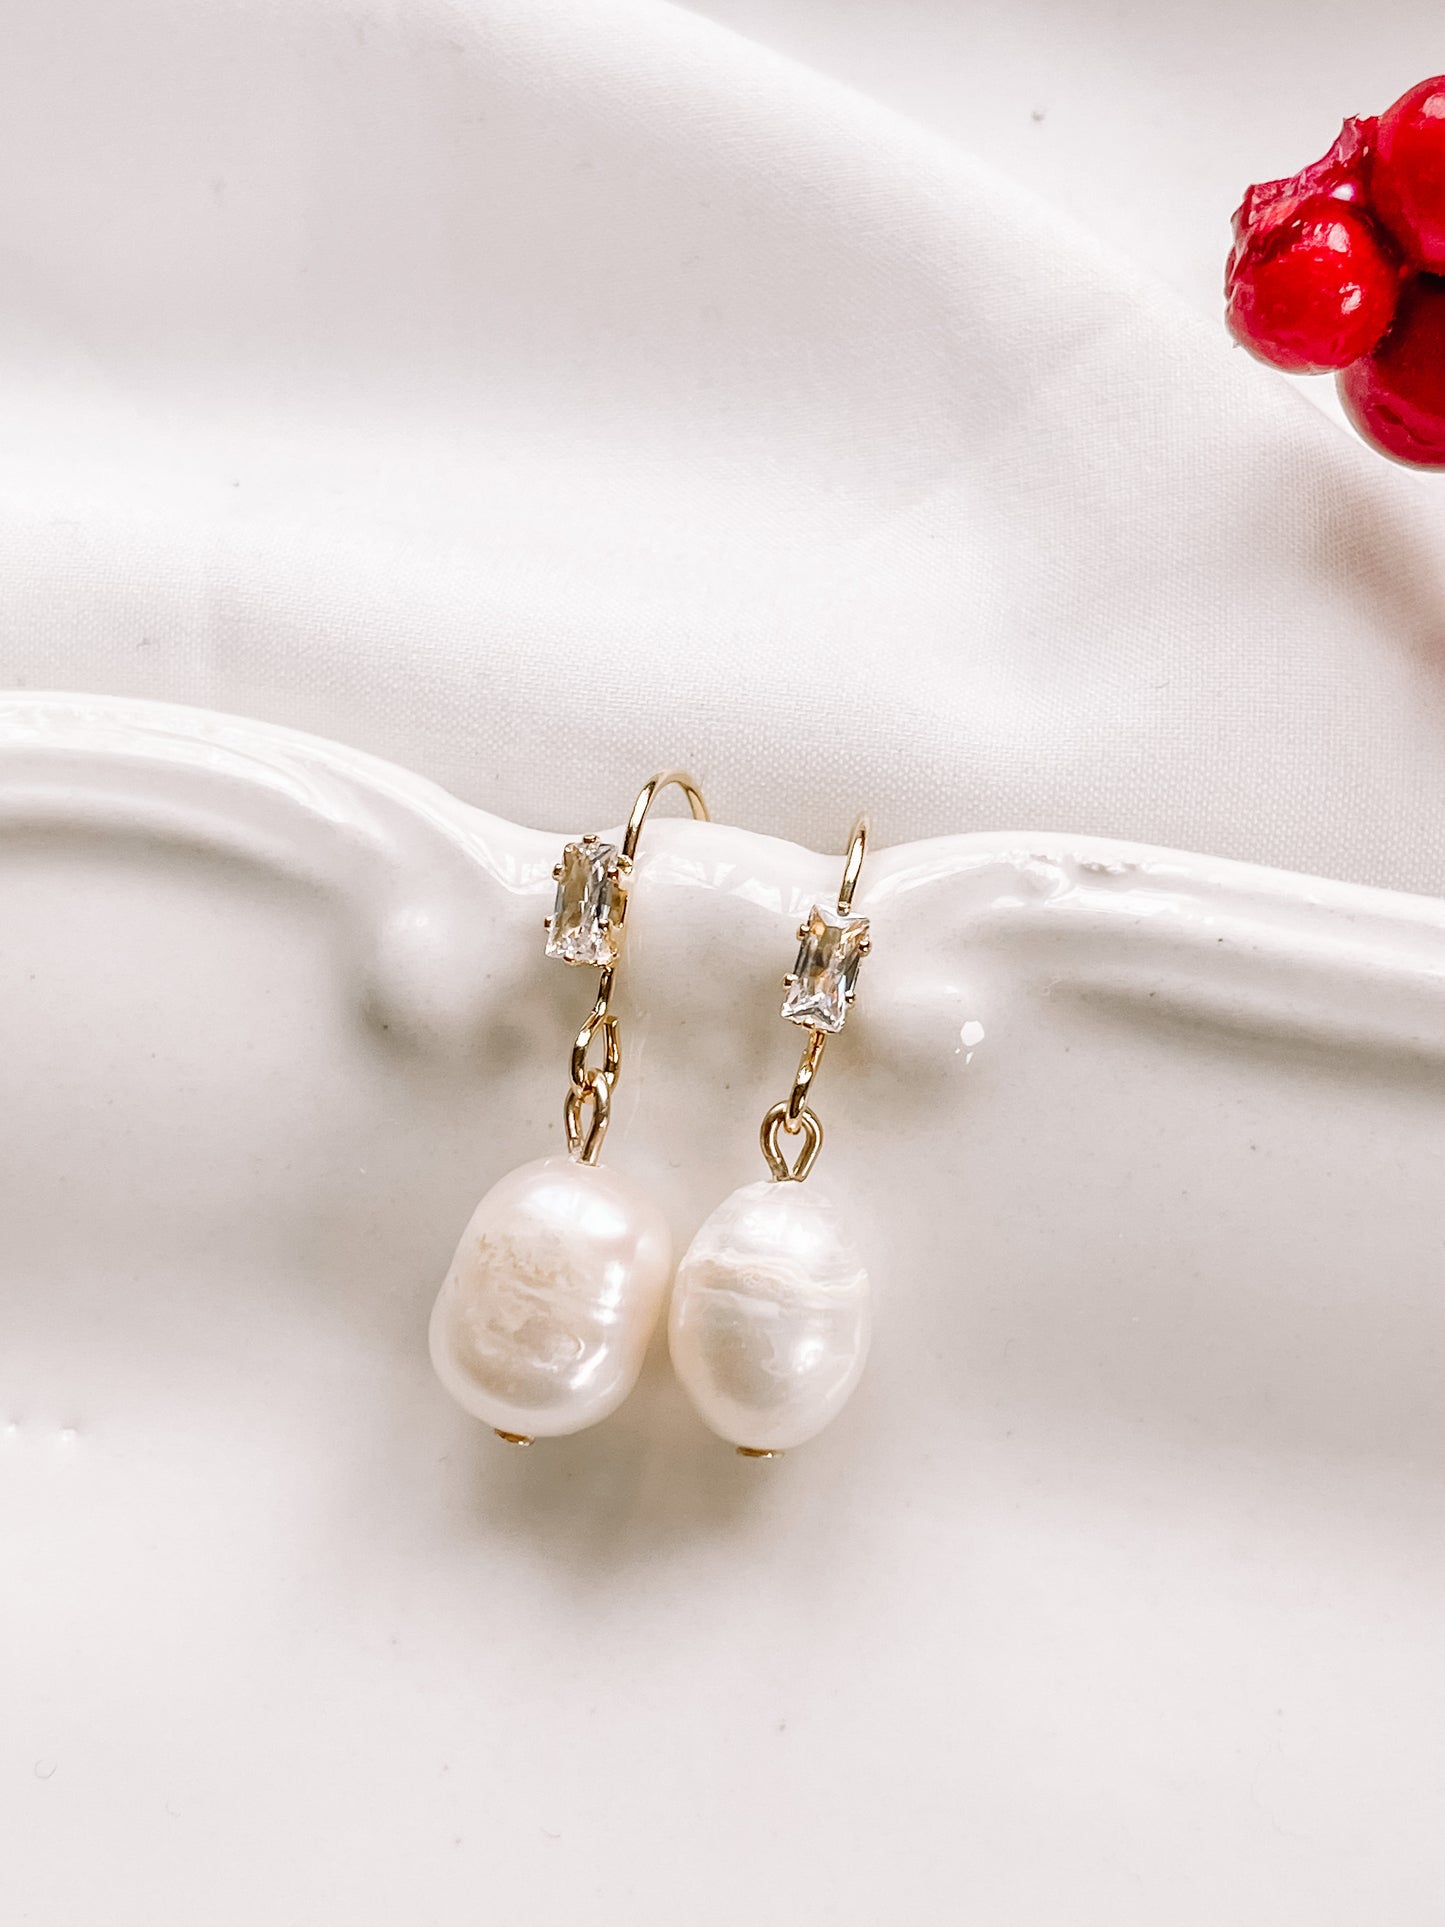 Staple pearl earrings